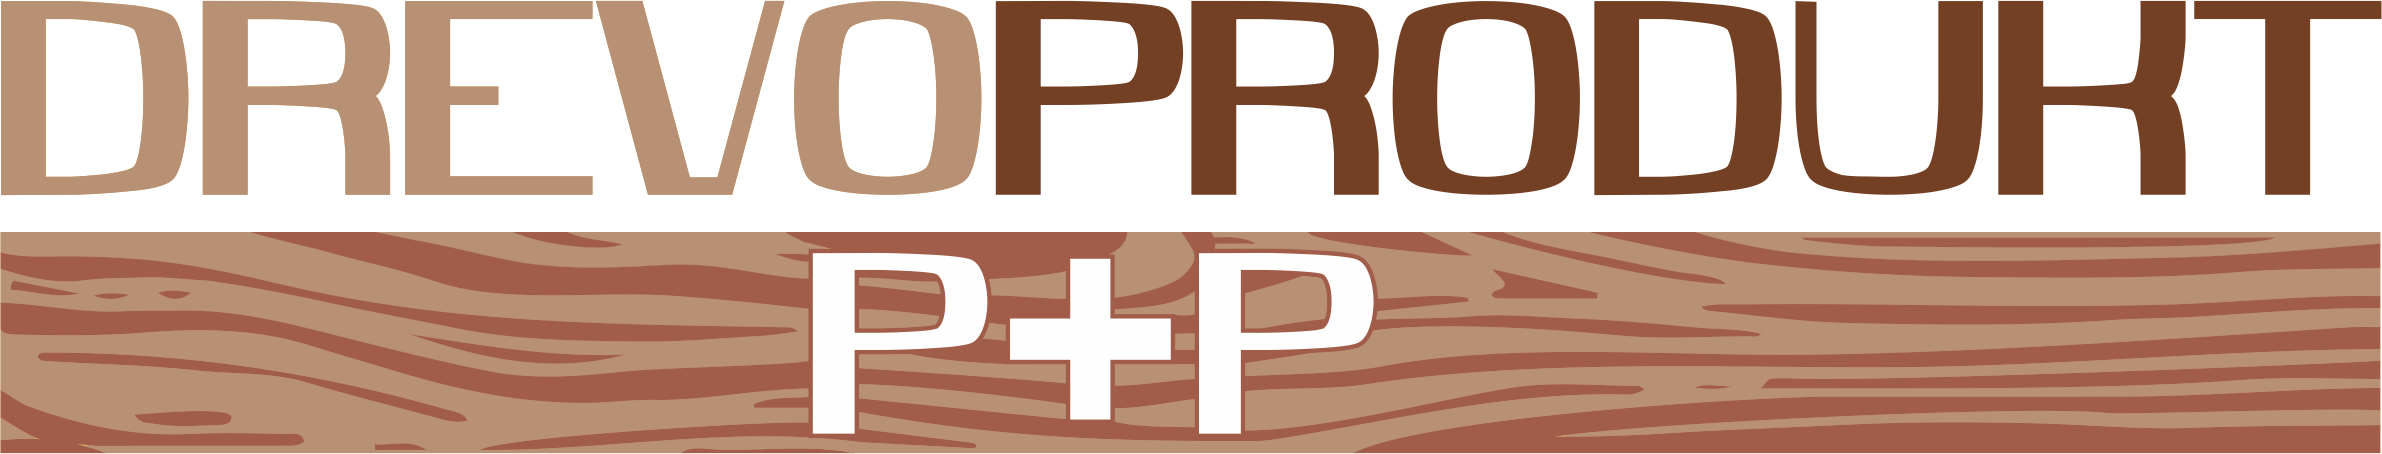 Drevoprodukt_logo